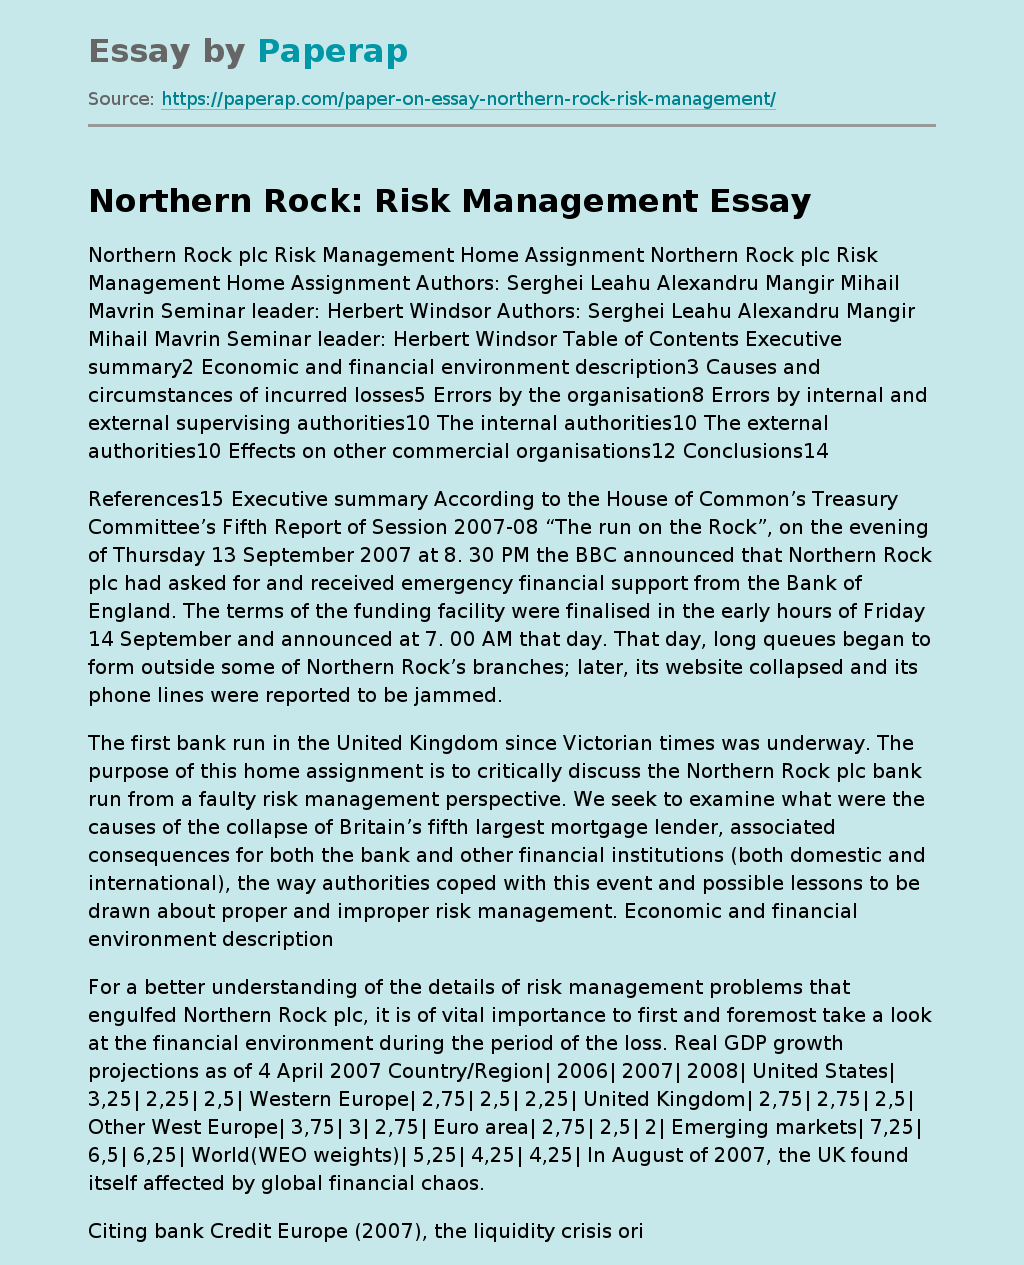 Northern Rock: Risk Management